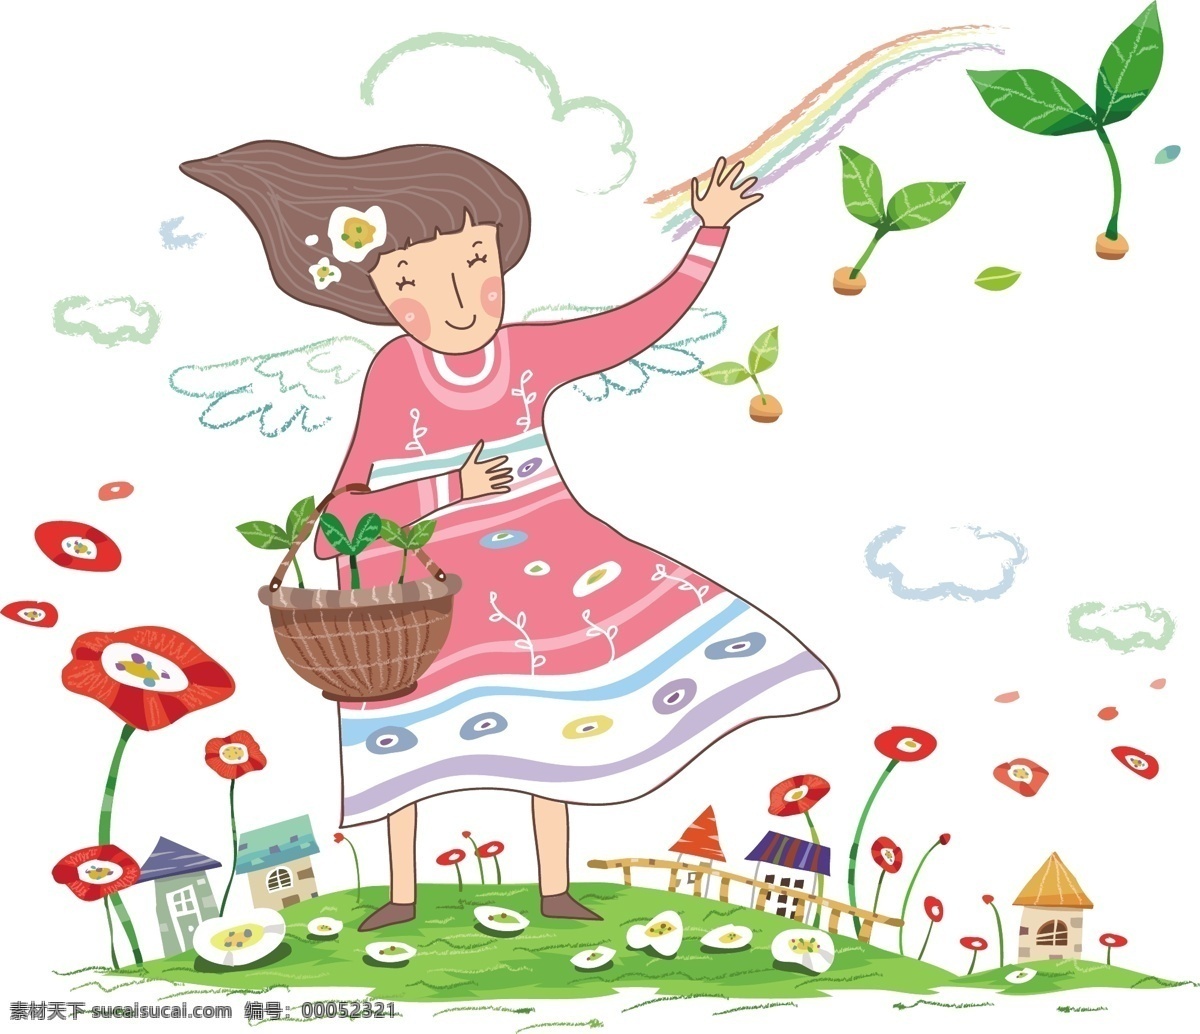 种树 女孩 插画 场景 故事 韩国 卡通 情景 人物 童话 矢量 矢量图 矢量人物